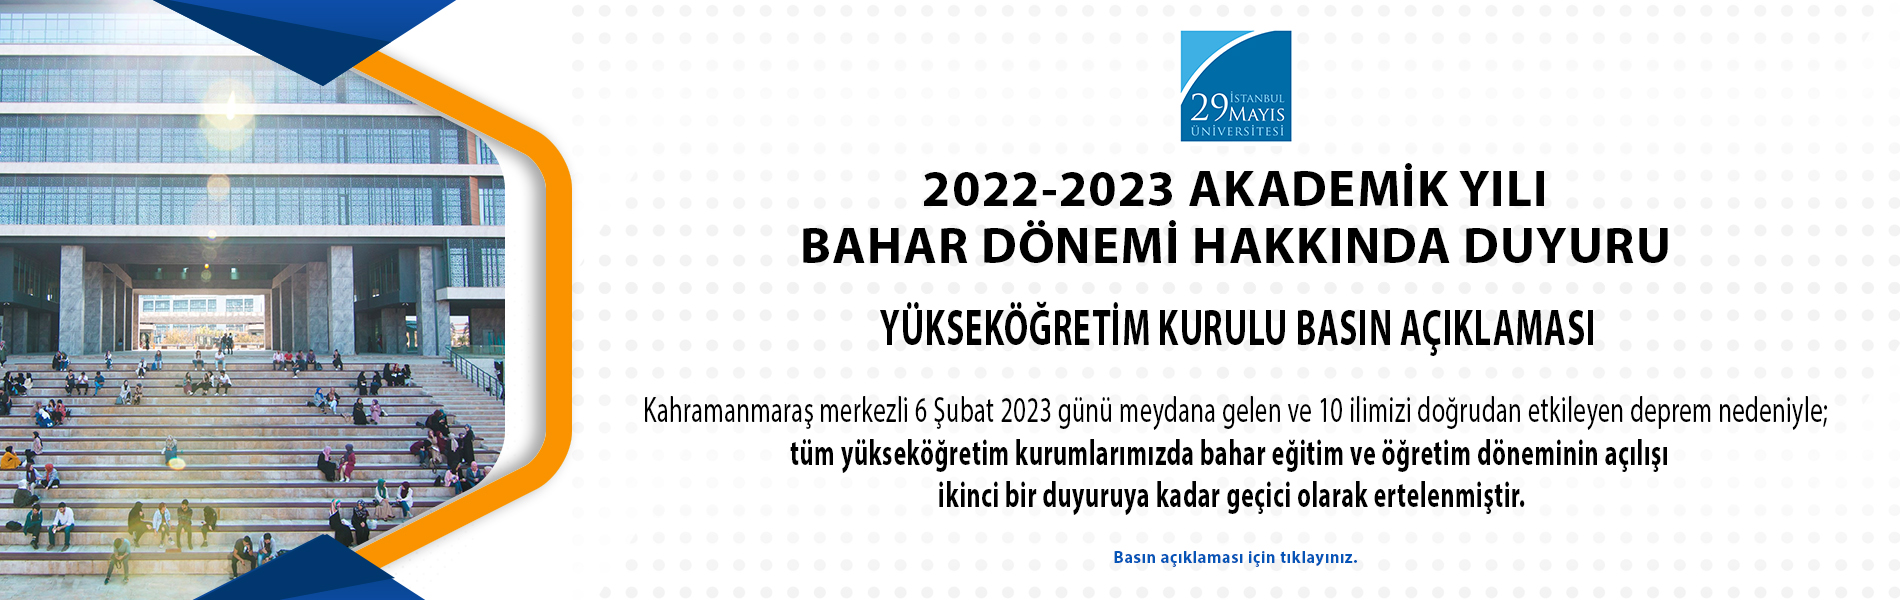 2022-2023 Eğitim Öğretim Yılı Bahar Dönemi Hakkında Yükseköğretim Kurulu Basın Açıklaması